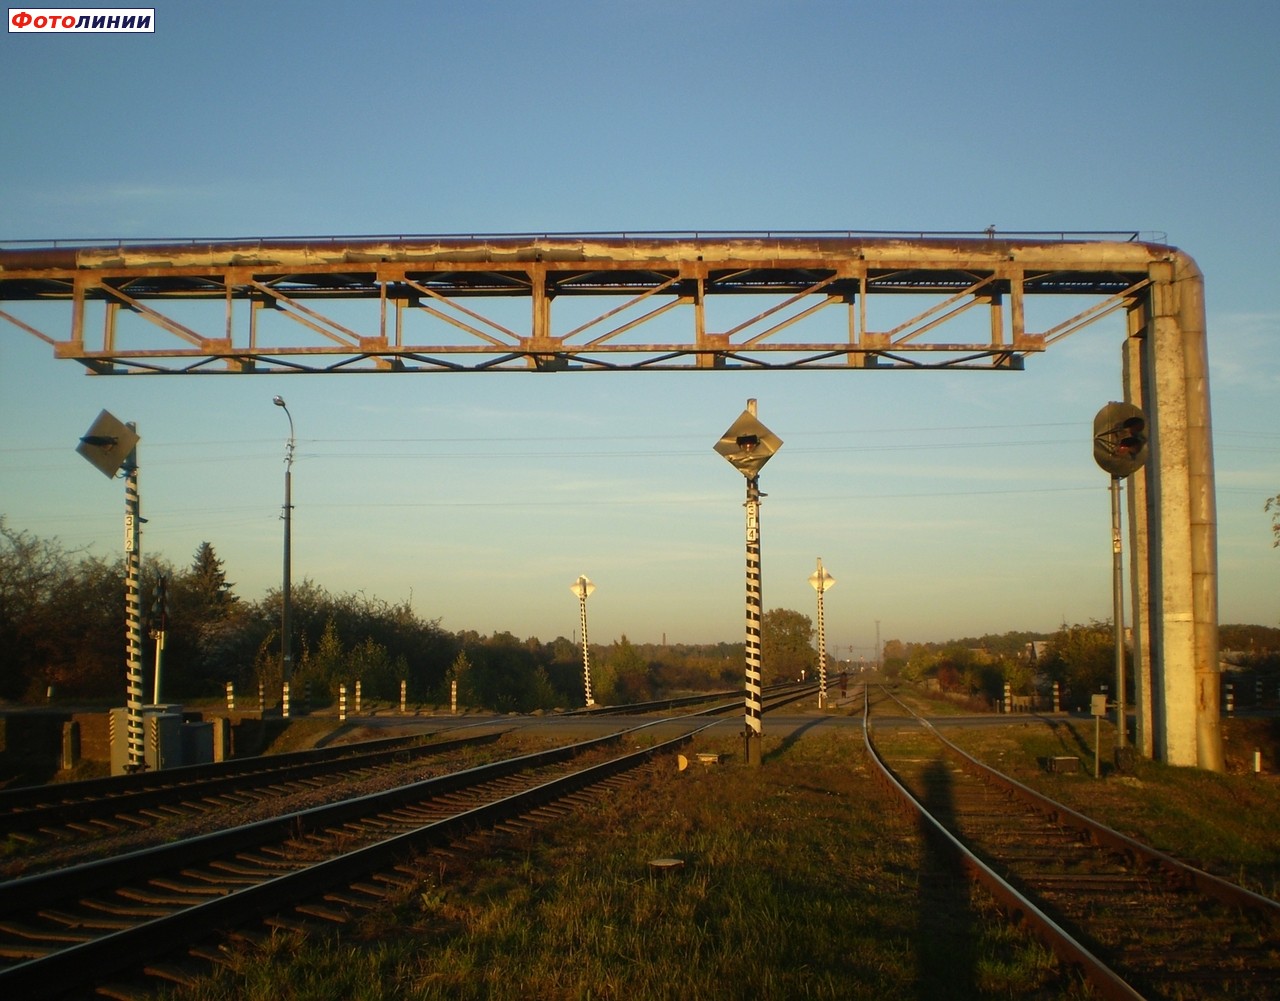 Заградительные светофоры ЗГ2, ЗГ4, маневровый МЧ перед железнодорожным переездом с ул. Дубровской